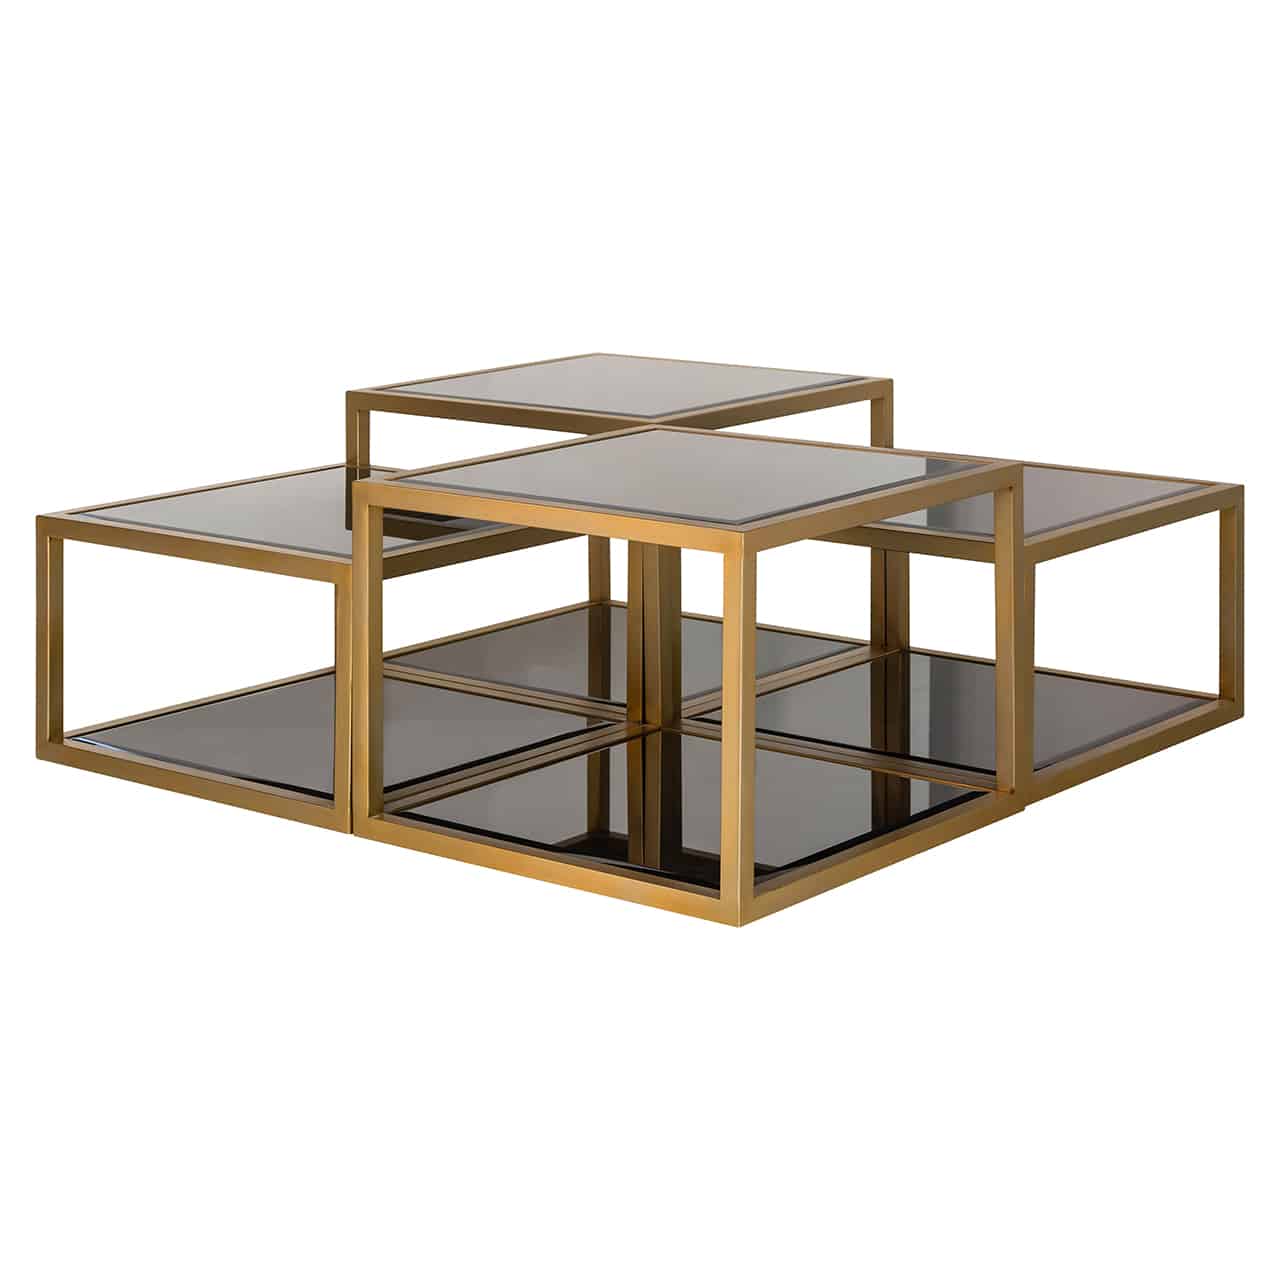 Couchtisch bestehend aus vier Gestellen quadratischer  matt goldener  Quader in zwei  Höhen;  sowohl die Bodenfläche, als auch die  Oberfläche der Tische ist mit dunklem Glas belegt.